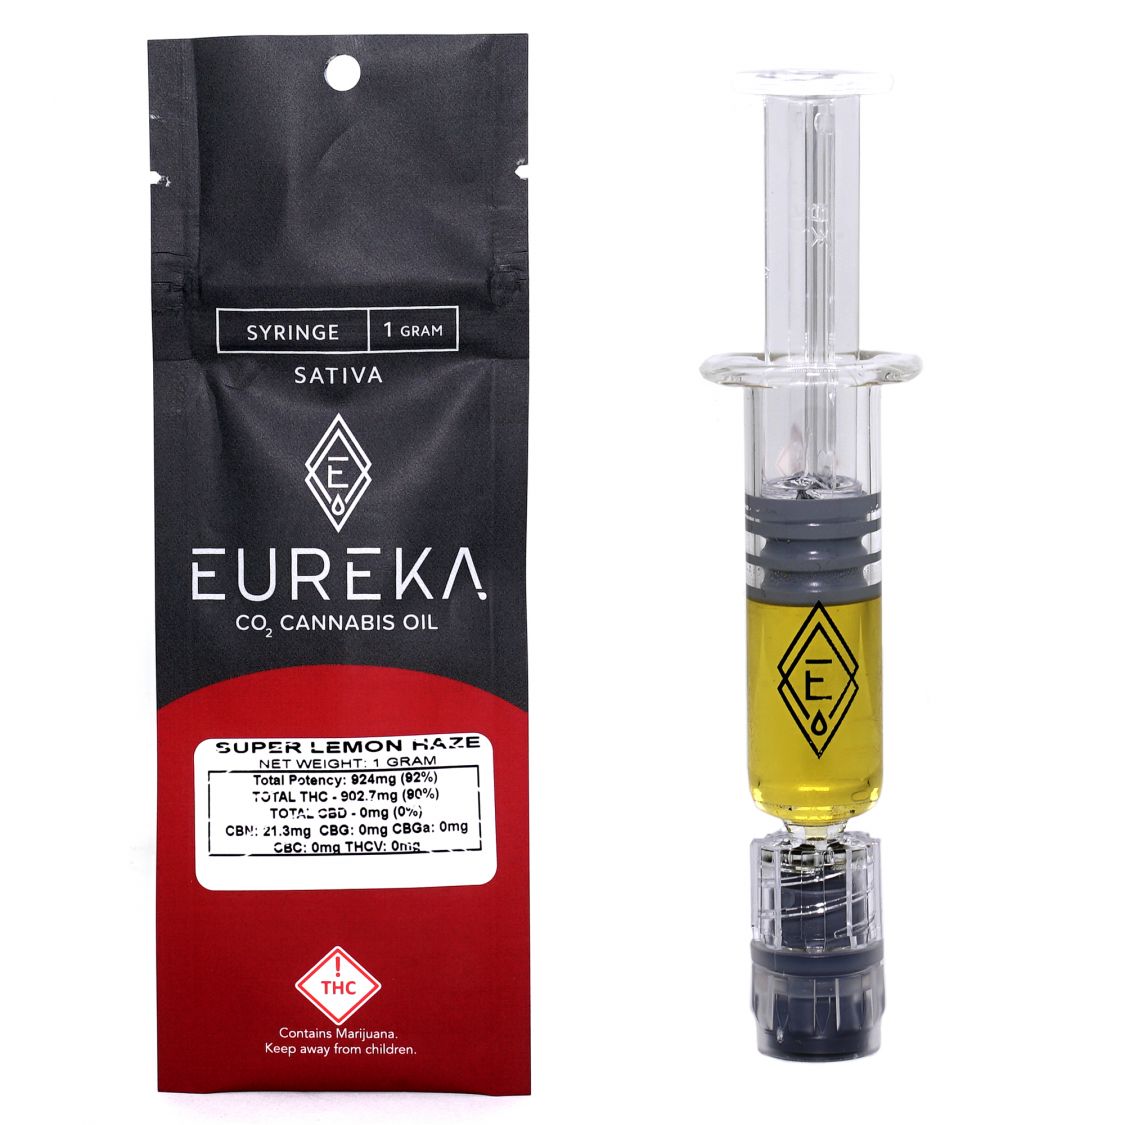 Eureka Super Lemon Haze Concentrates Oil